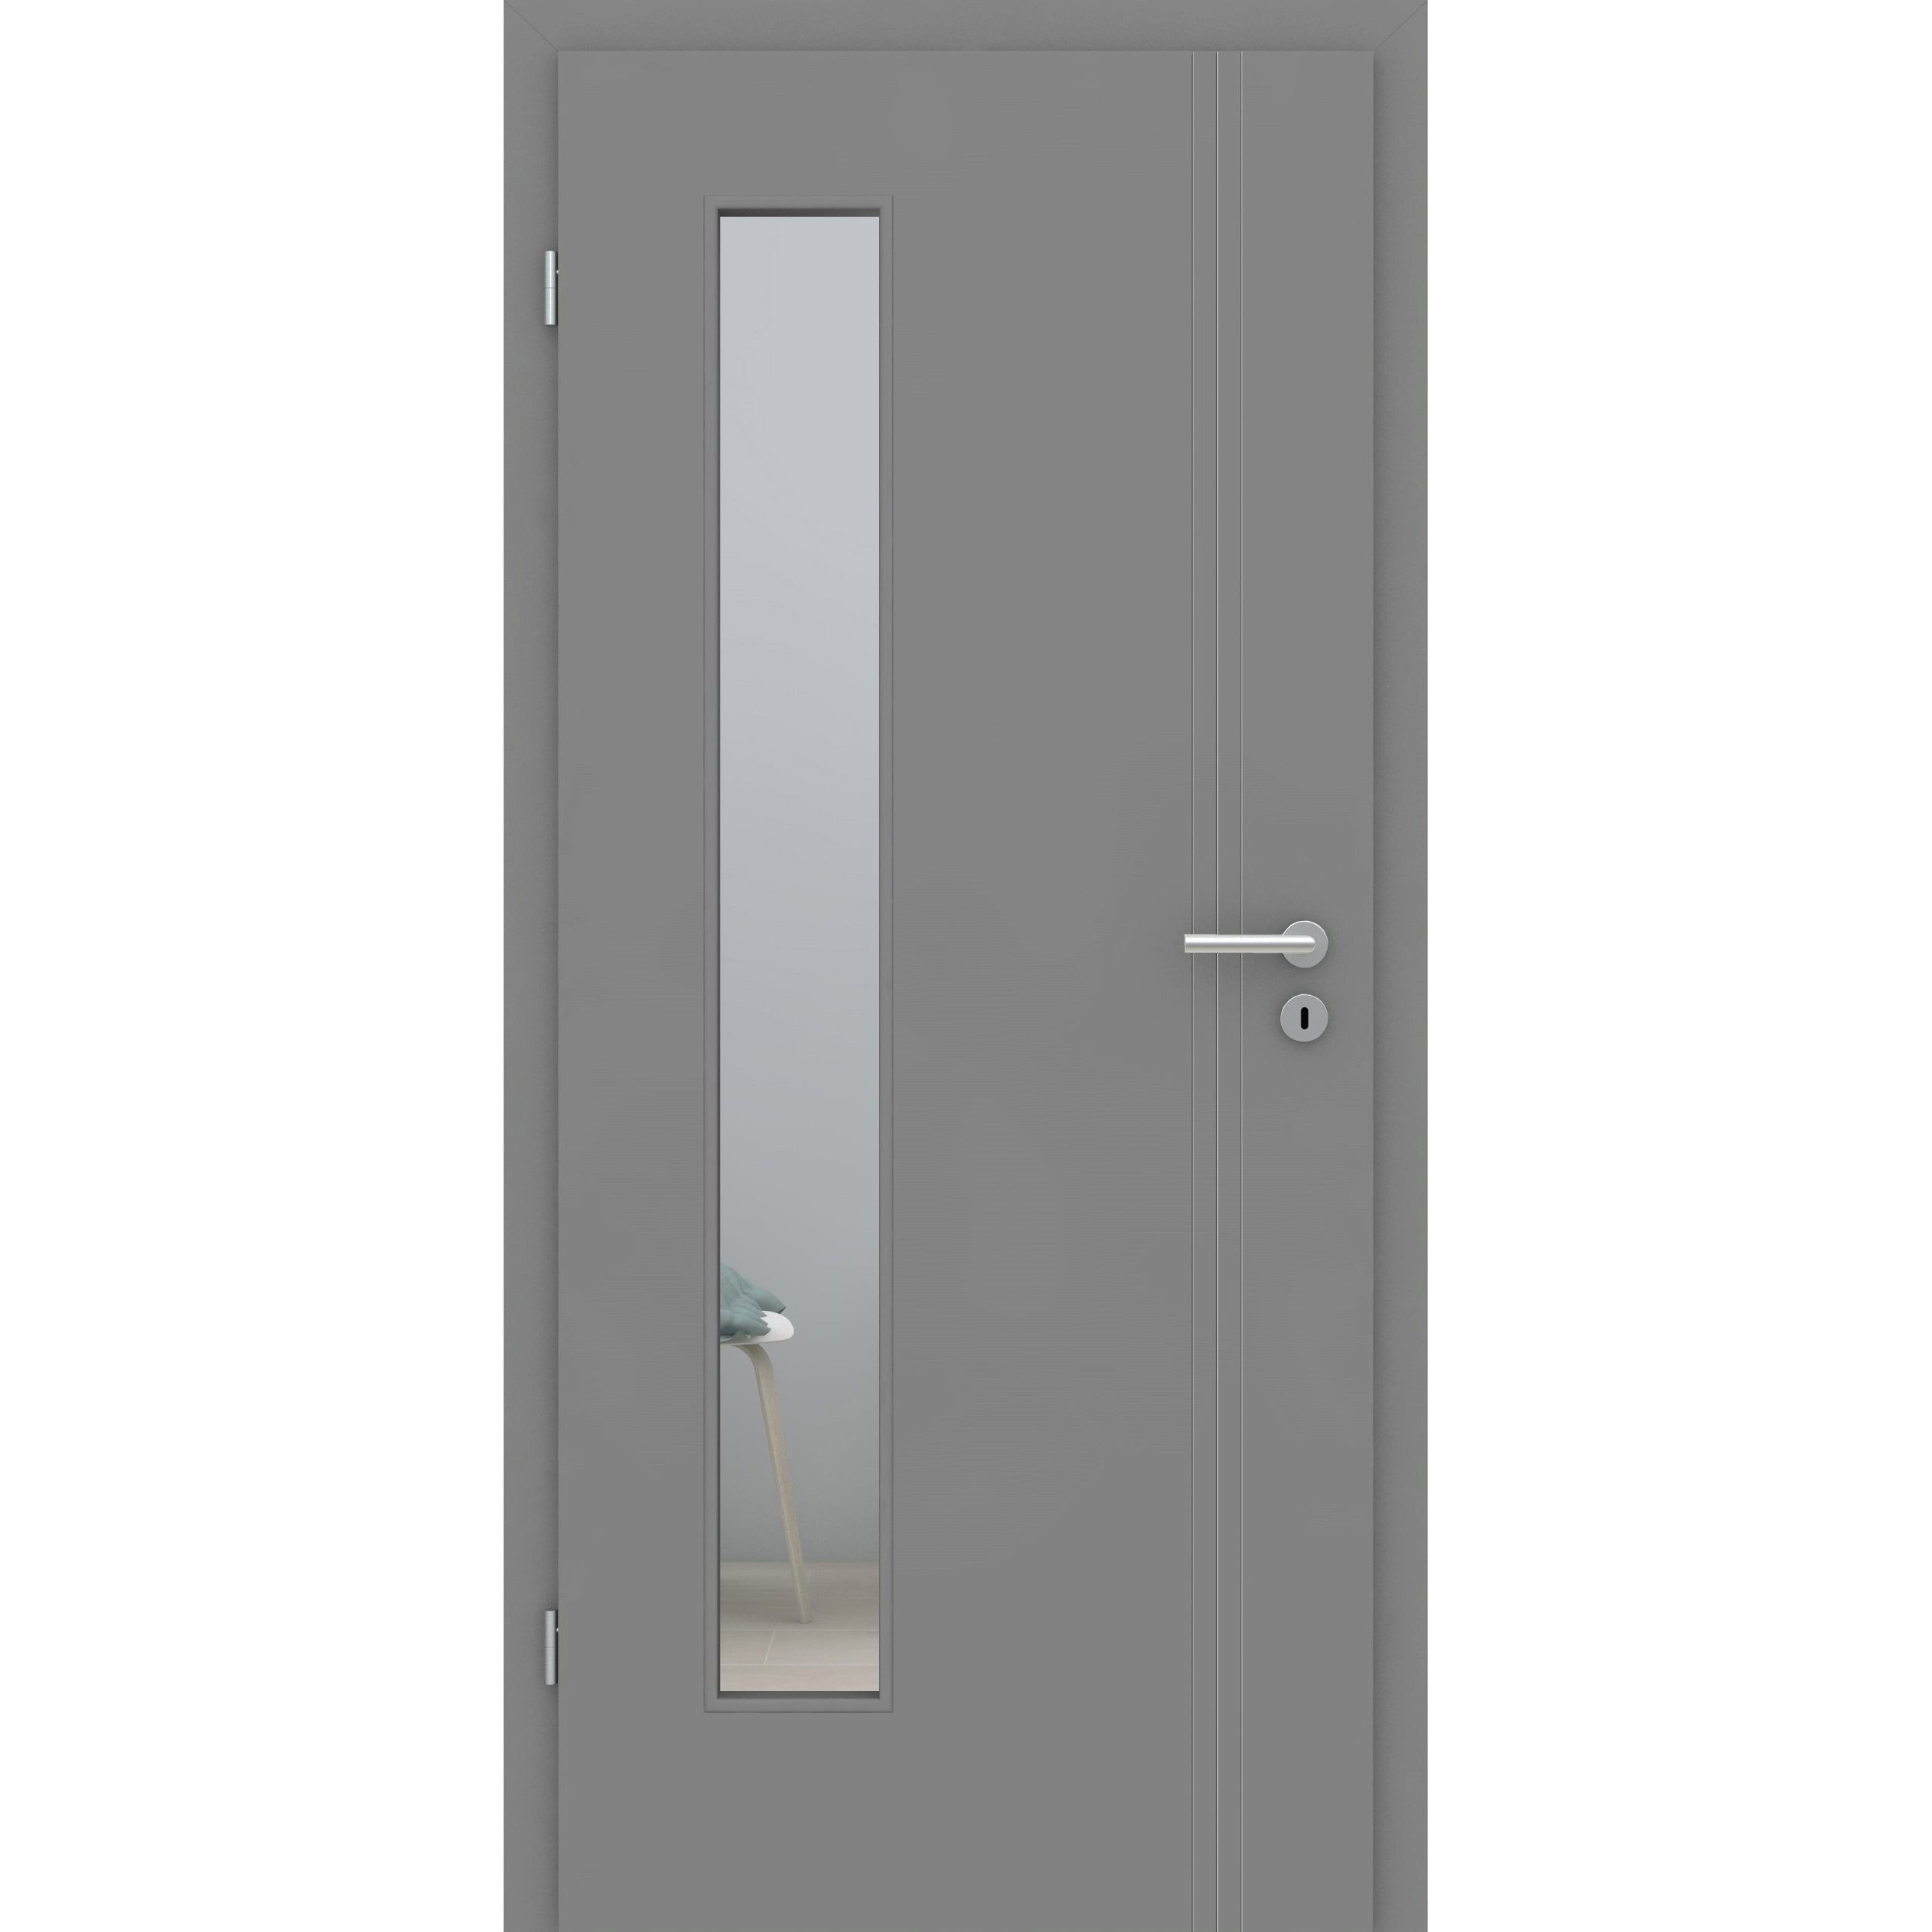 Zimmertür mit Lichtausschnitt grau 3 Rillen aufrecht Schlosseite Designkante - Modell Designtür VS37LAB